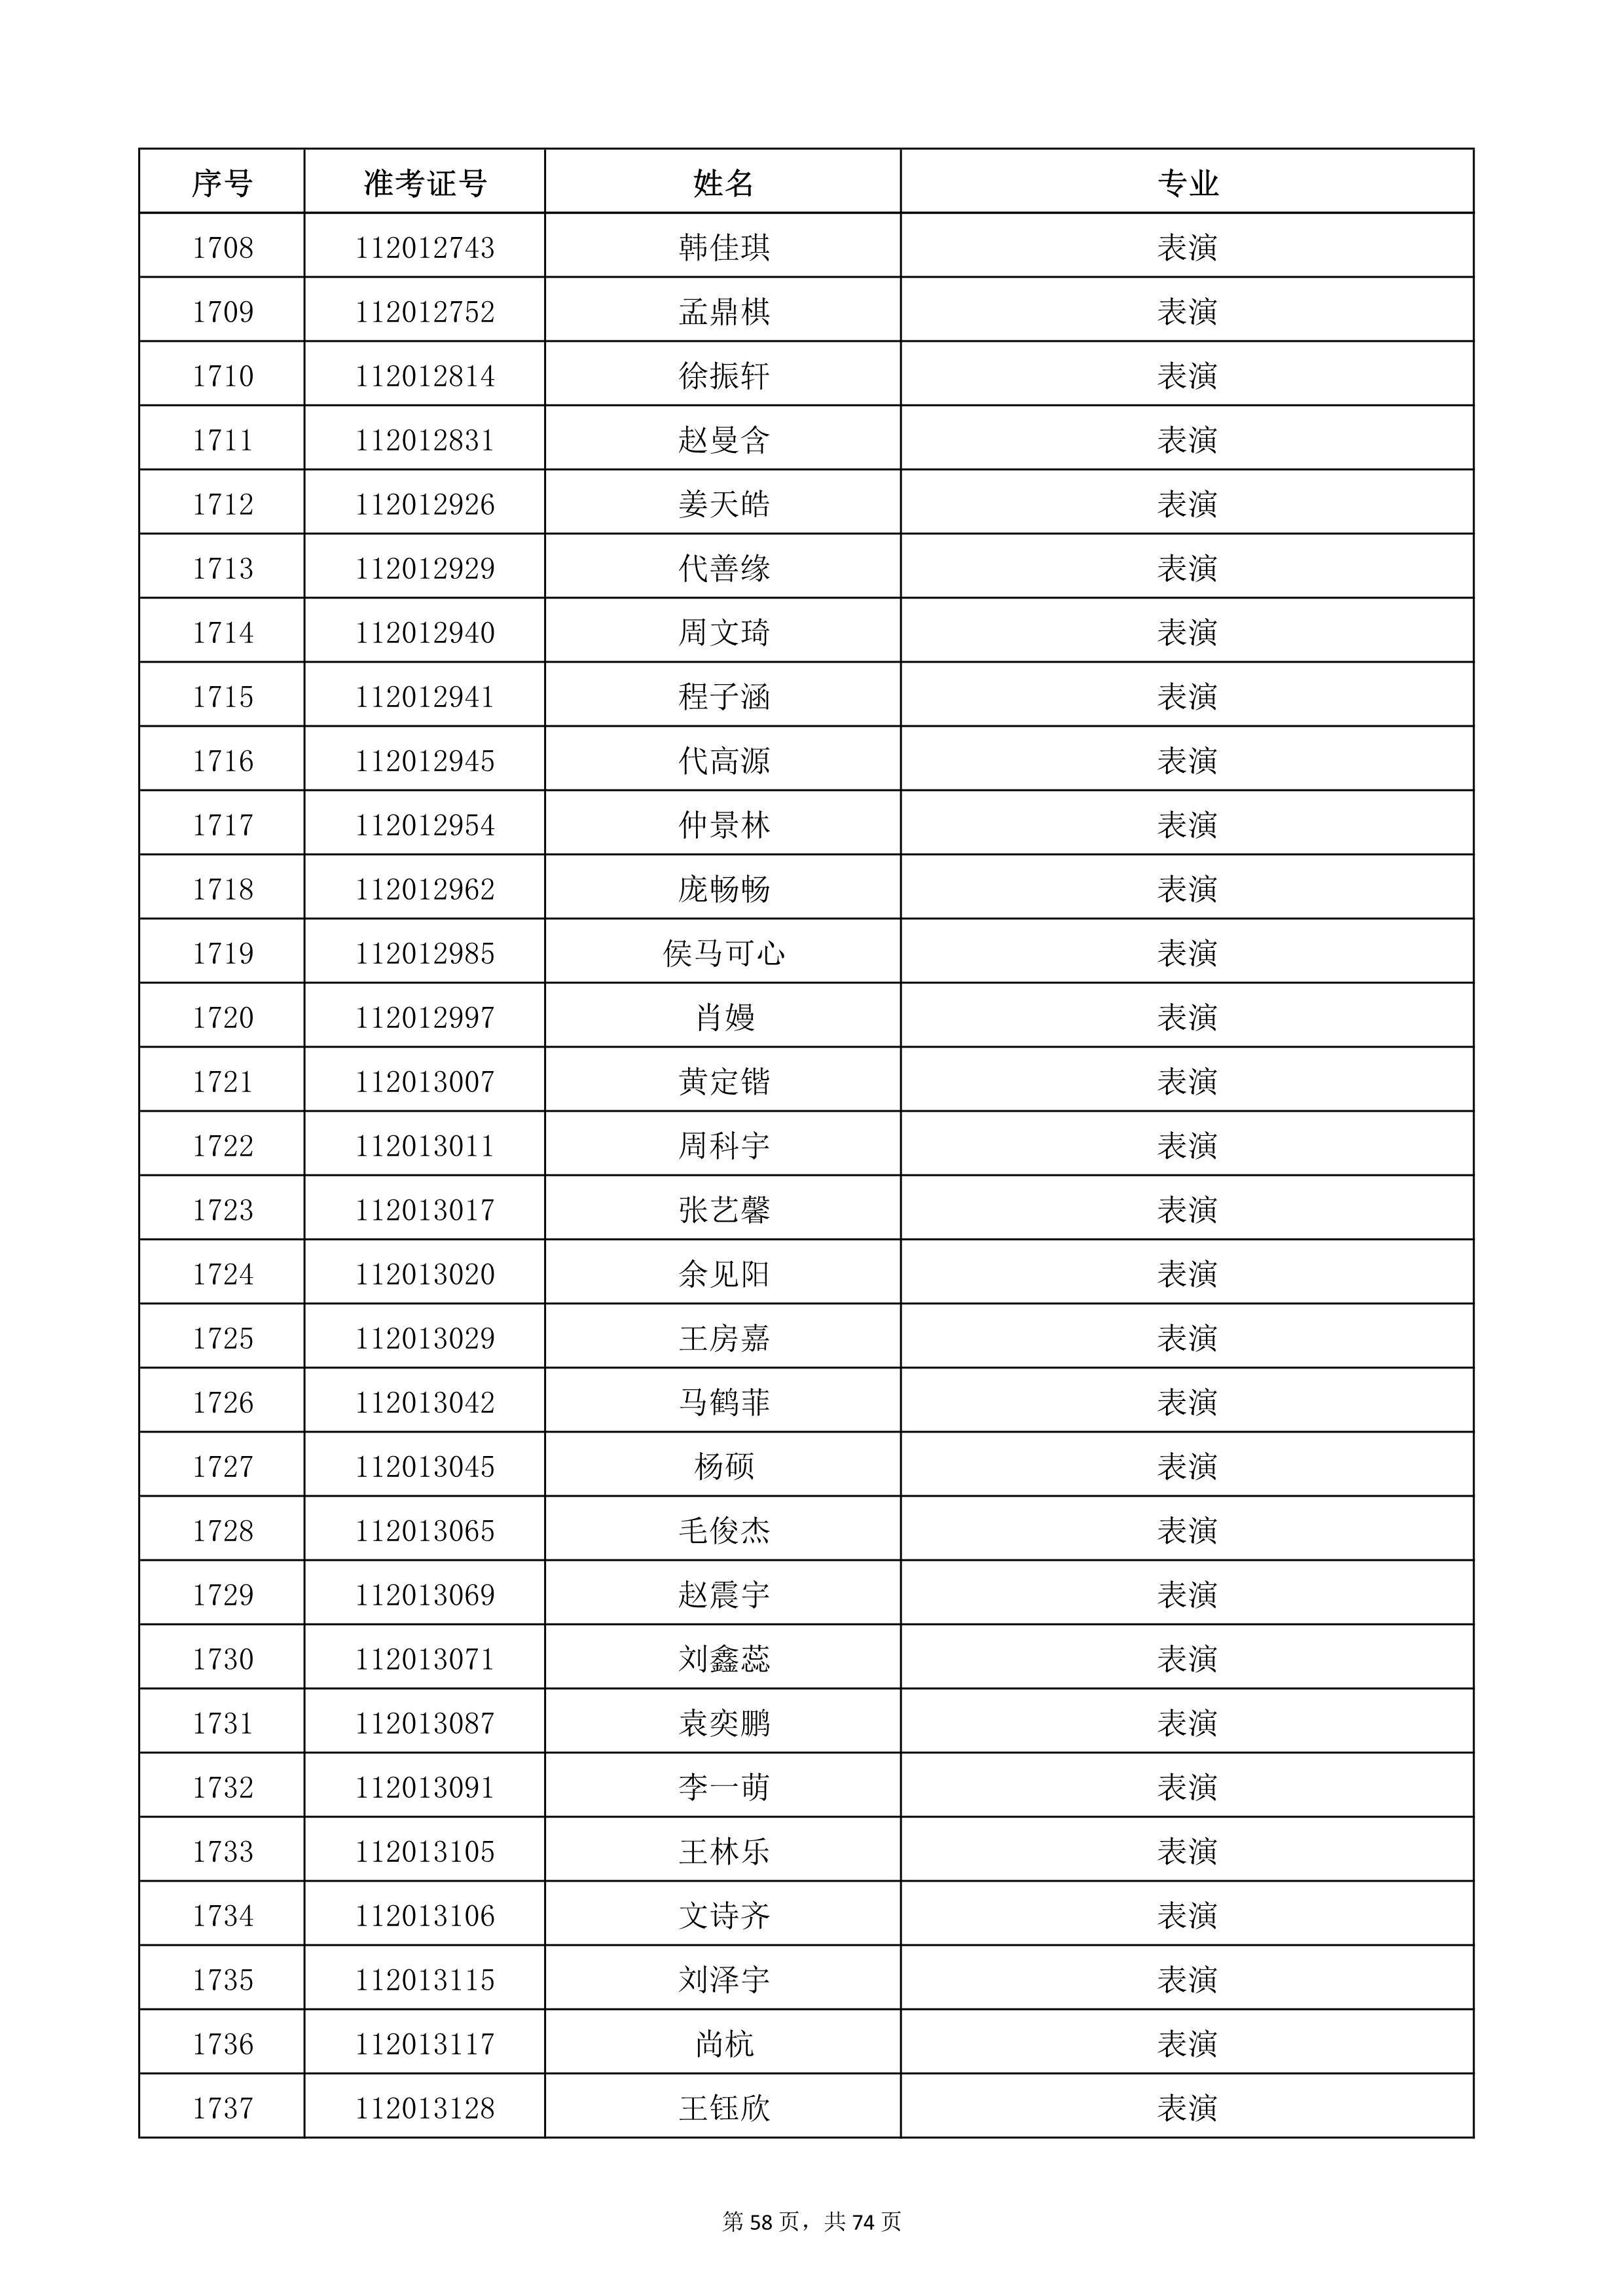 天津音乐学院2022年本科招生考试复试名单_58.jpg